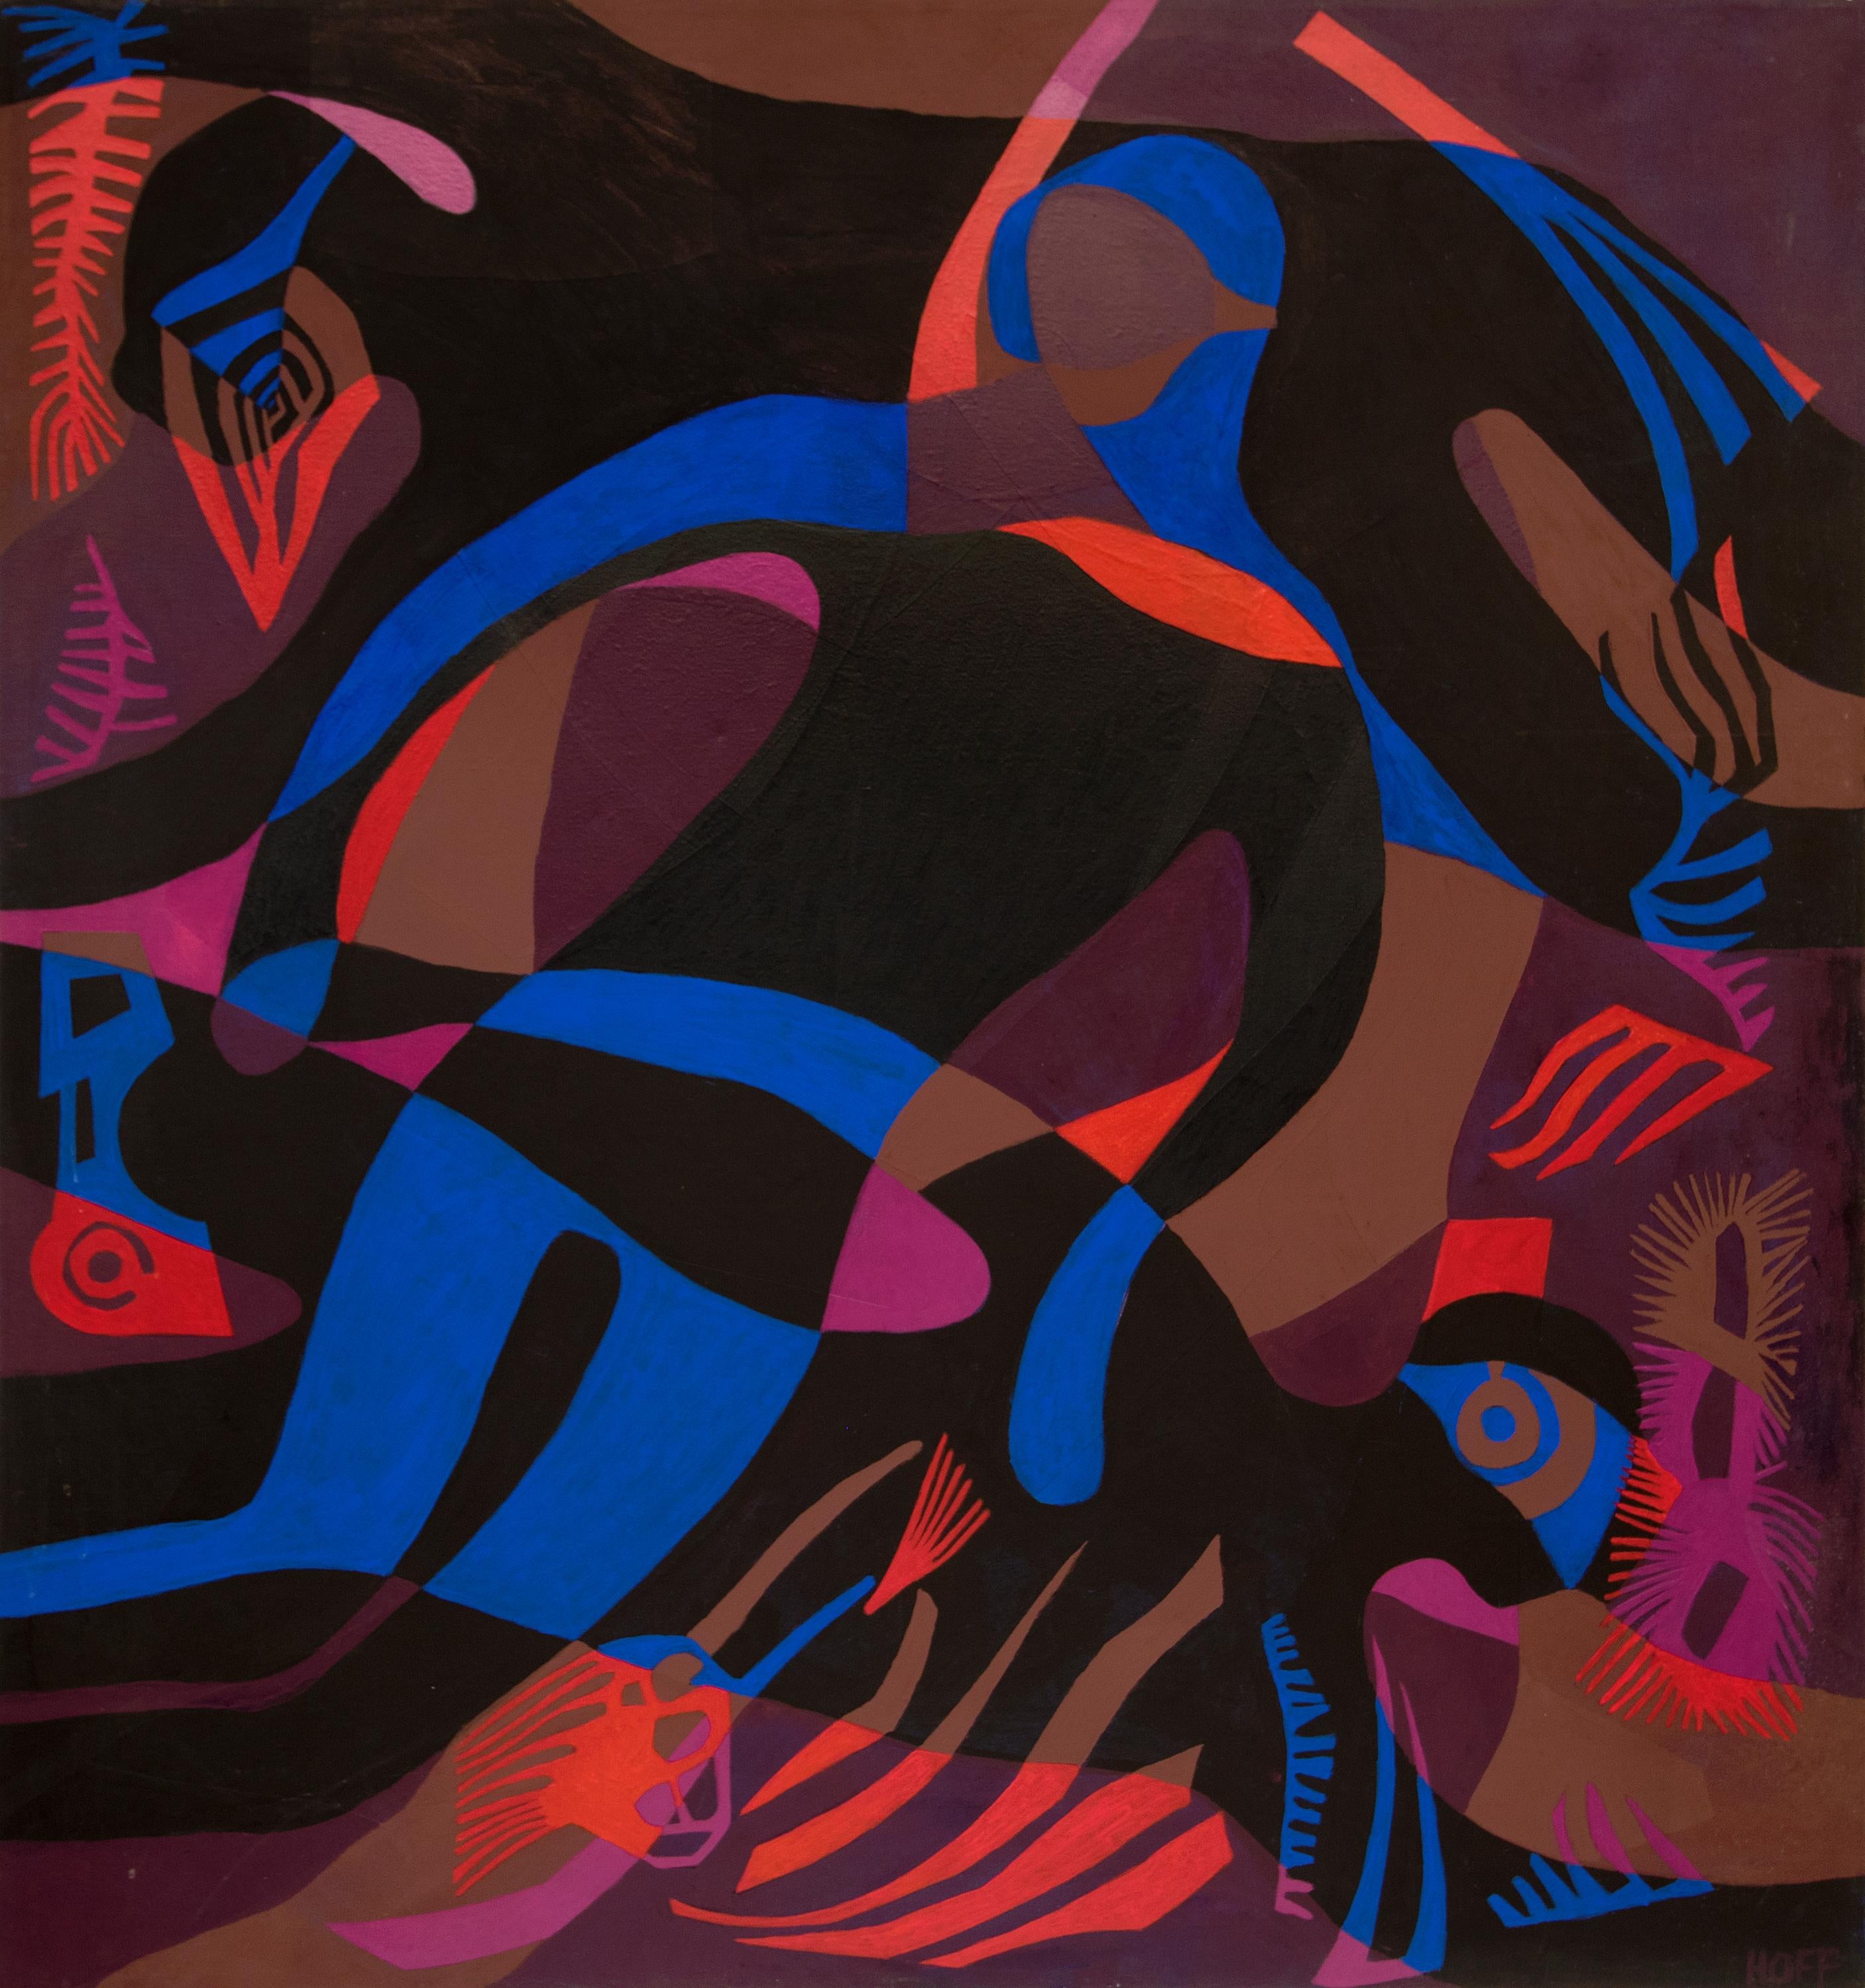 Figurative Painting Margo Hoff - Diverse foncée, peinture figurative abstraite sous-marine, collage bleu noir, rouge